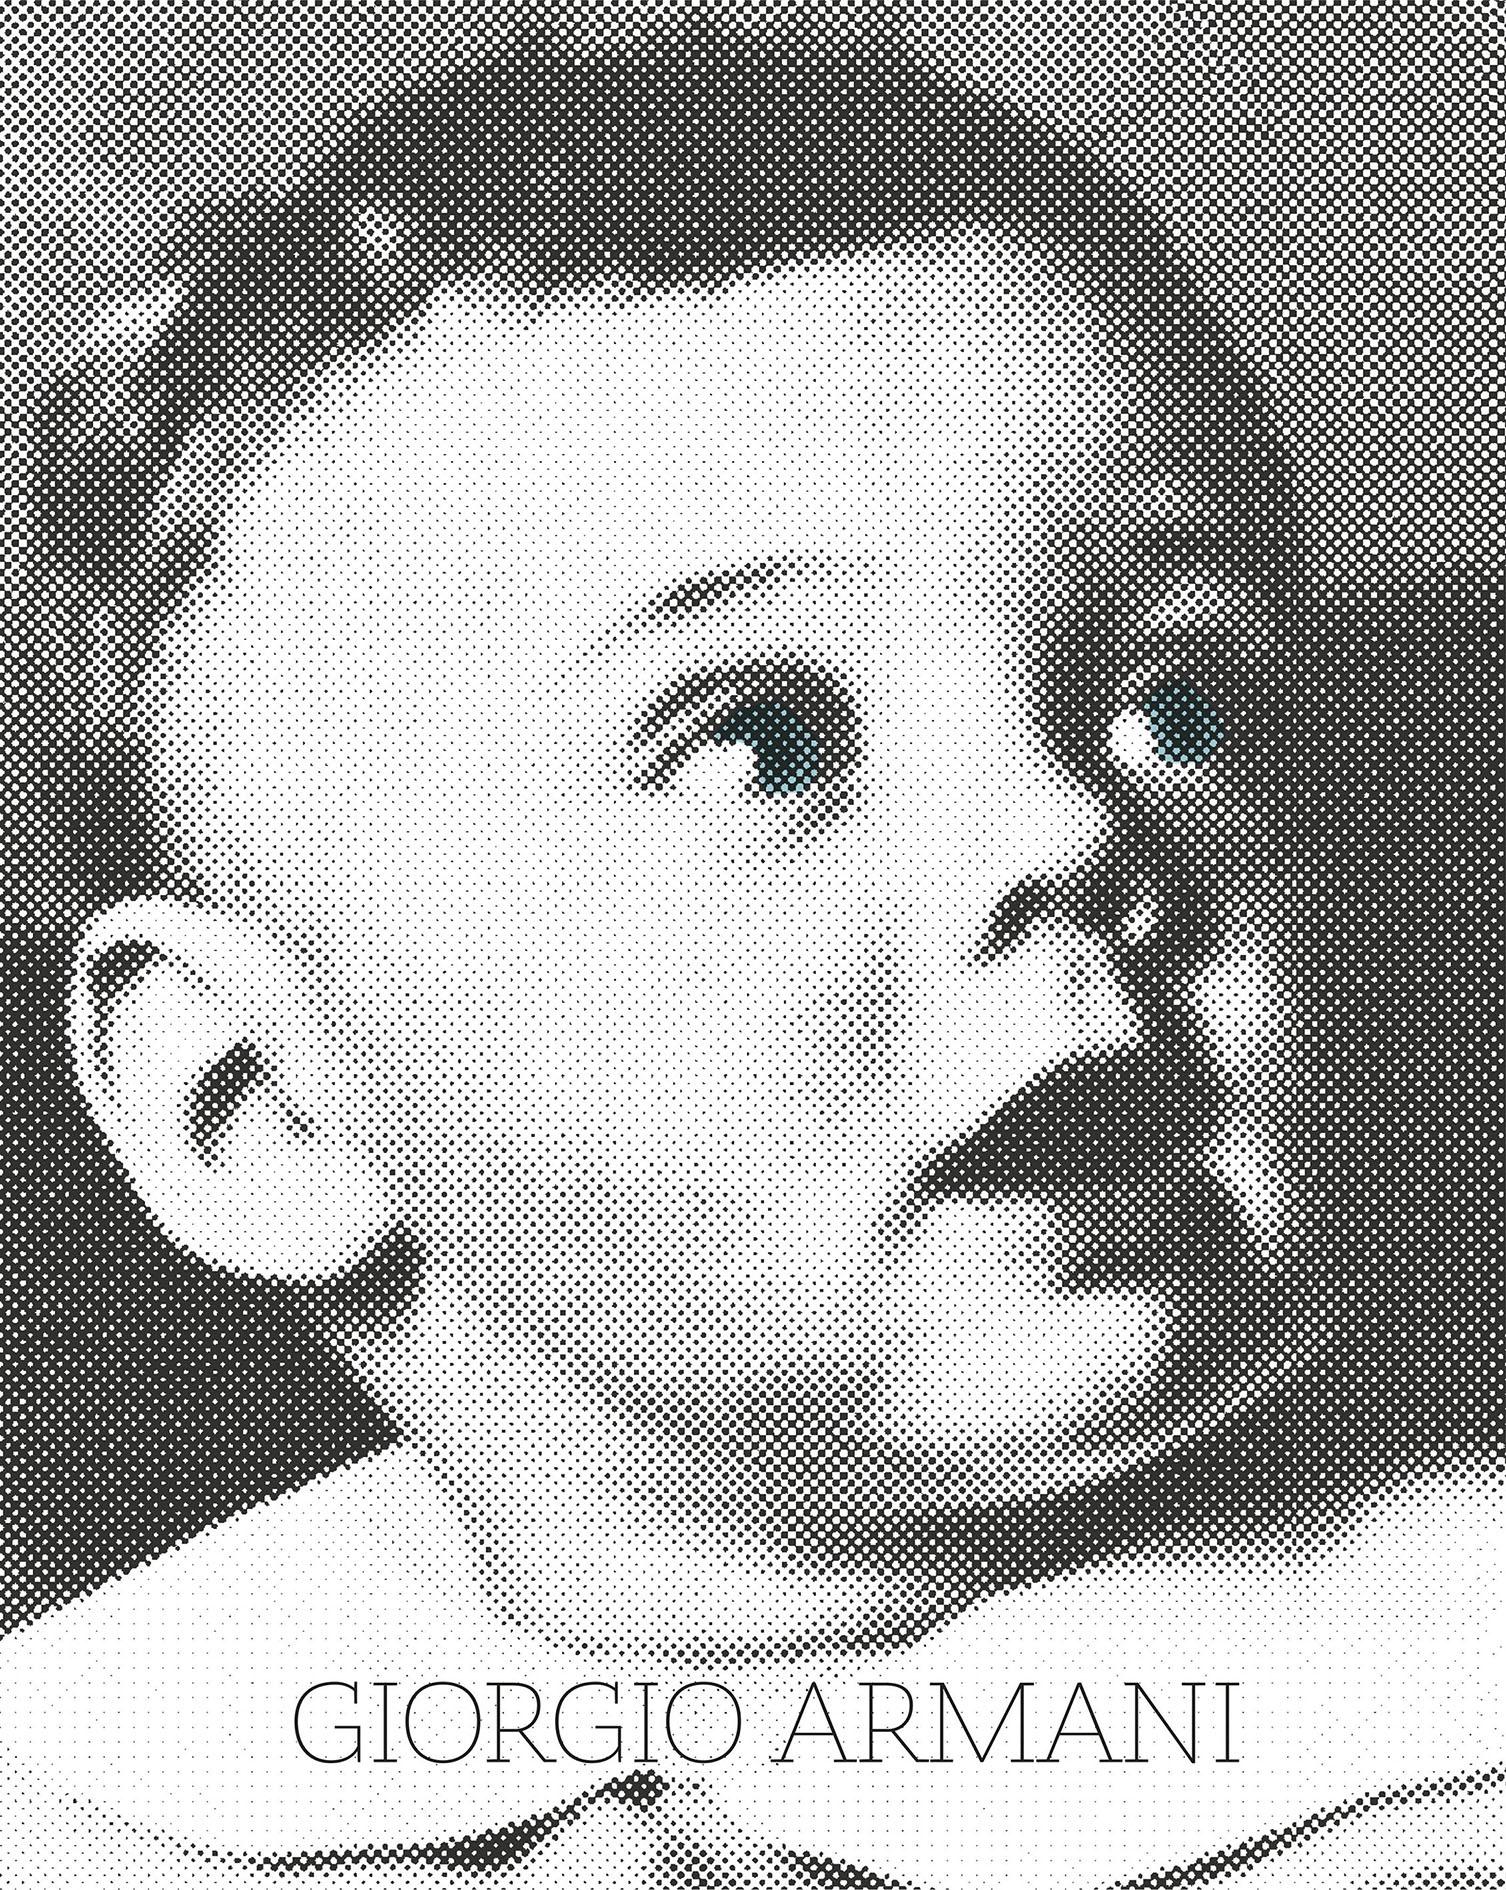 Giorgio Armani, copertina libro